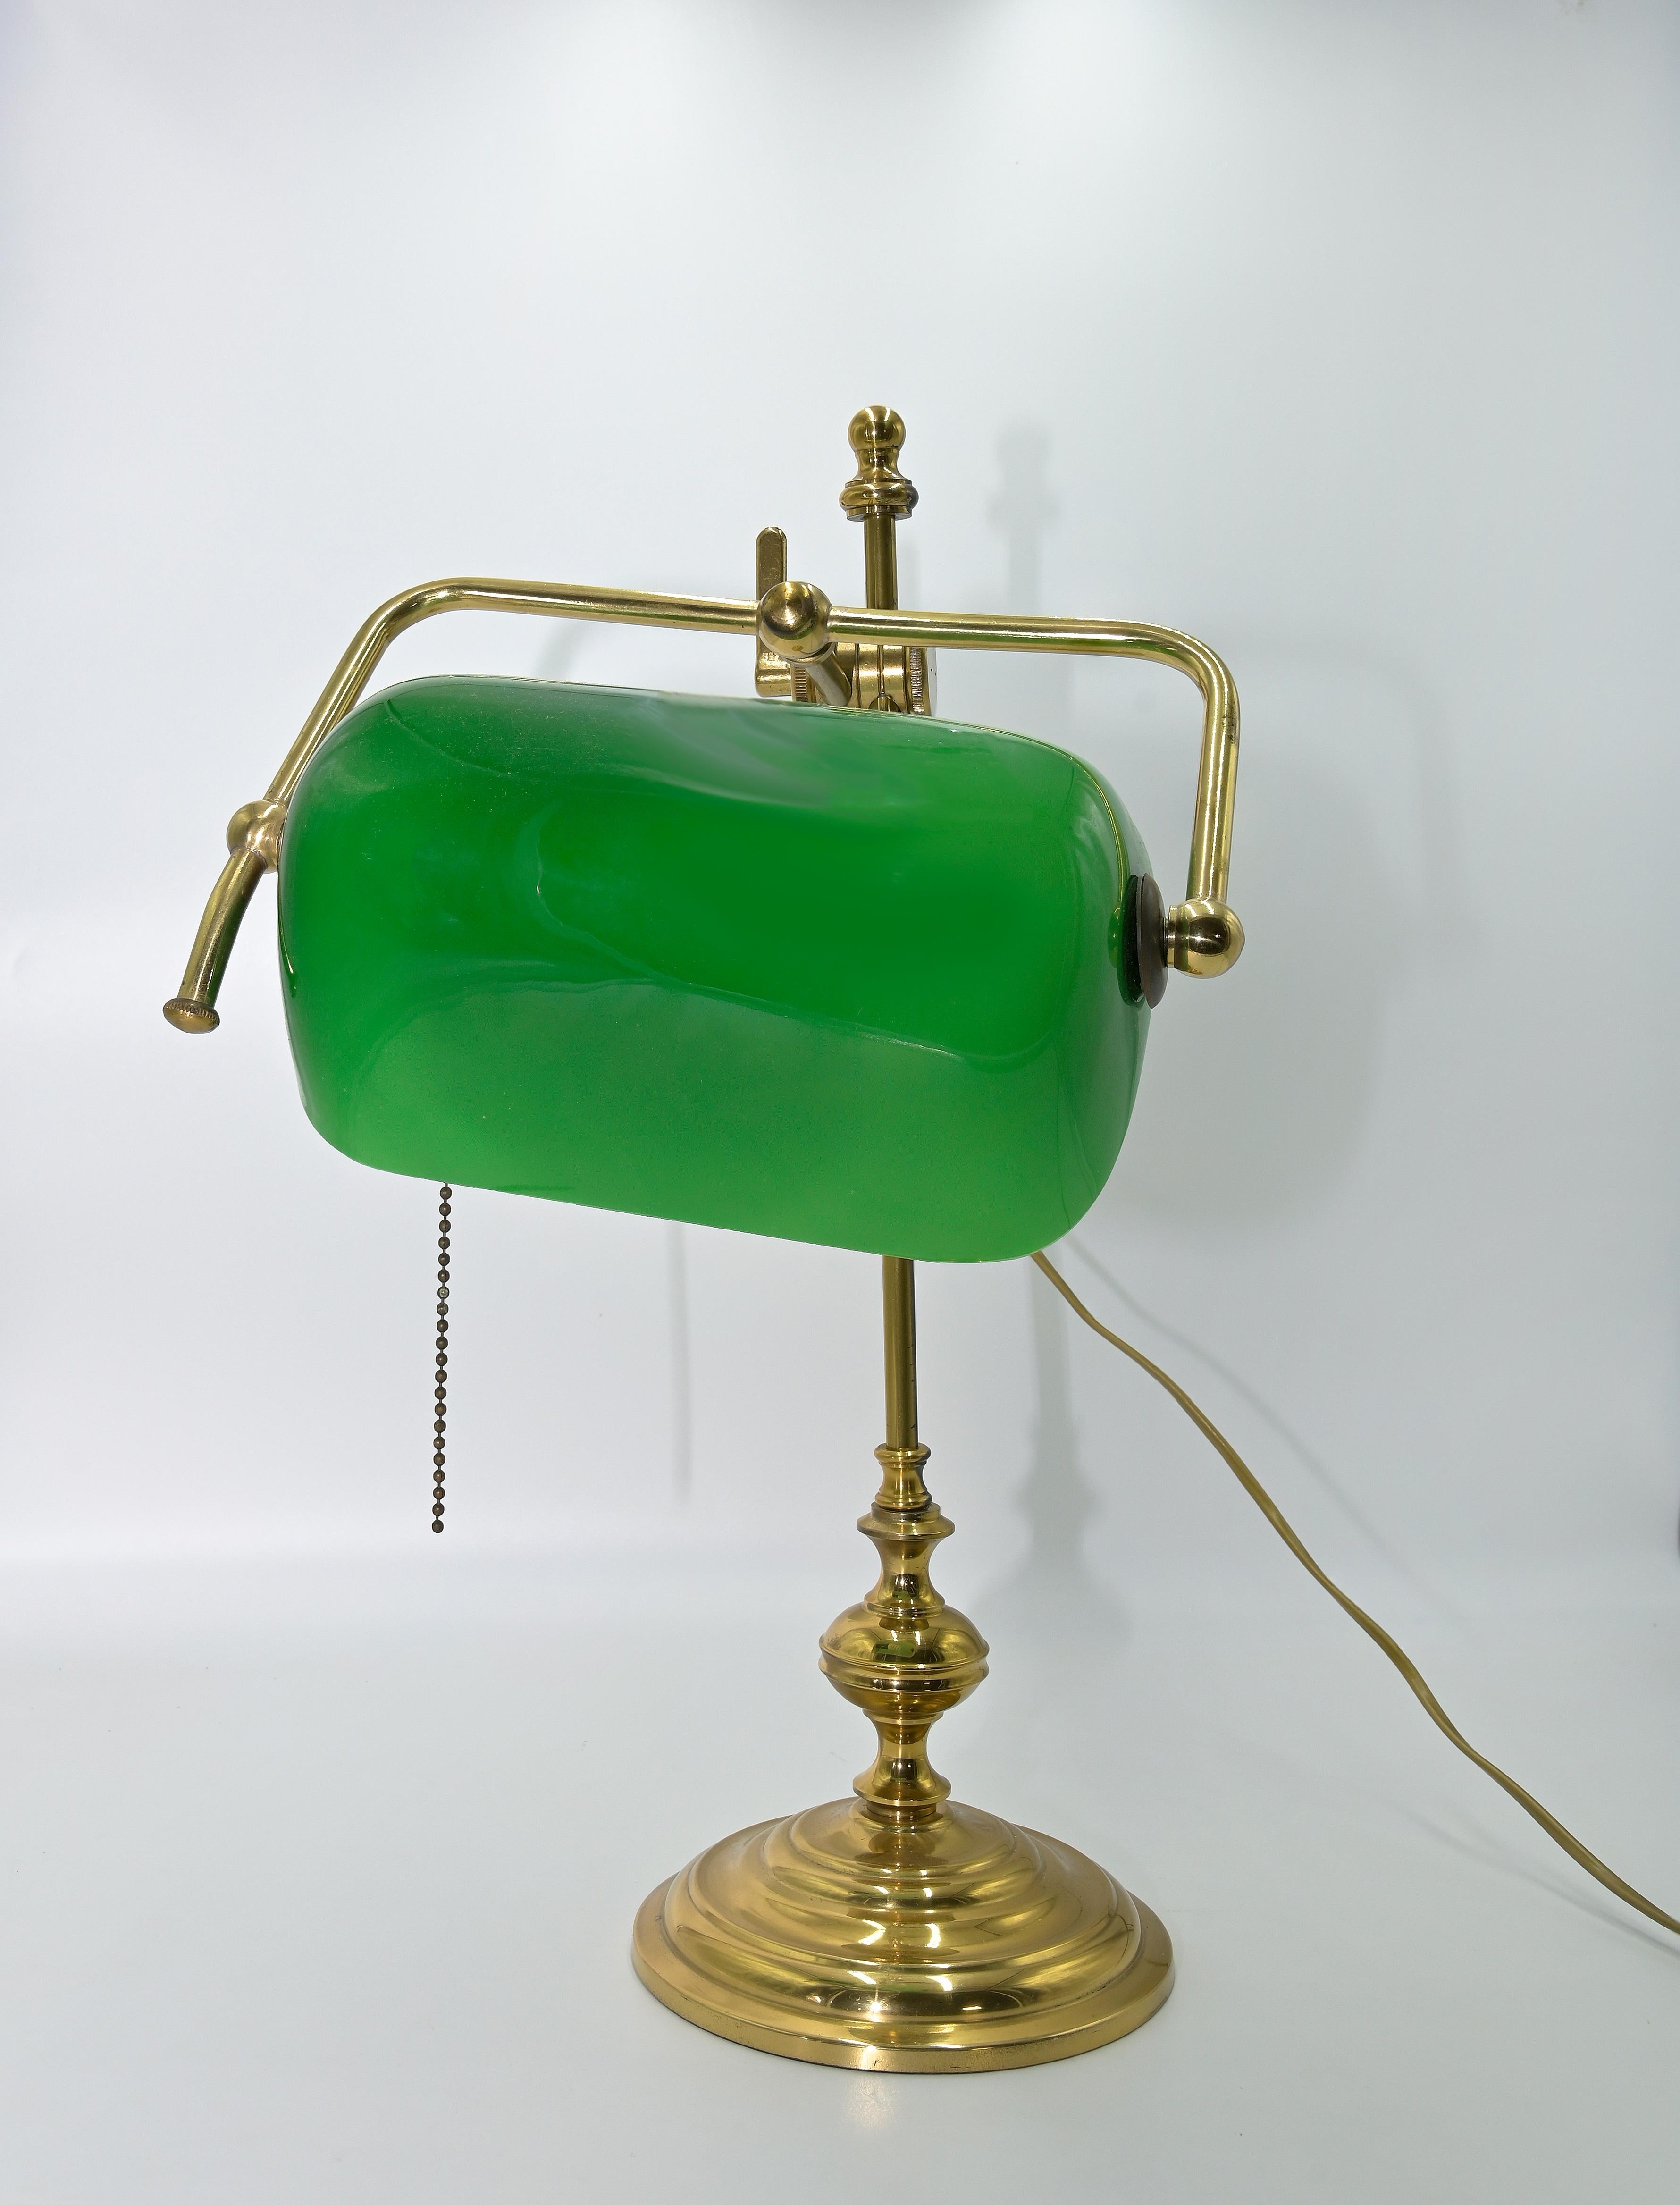 Lampe de bureau en laiton avec abat-jour en verre vert, présentant un design Art déco haut de gamme, Italie années 1980.

H47 D26 cm. 

Bonnes conditions.